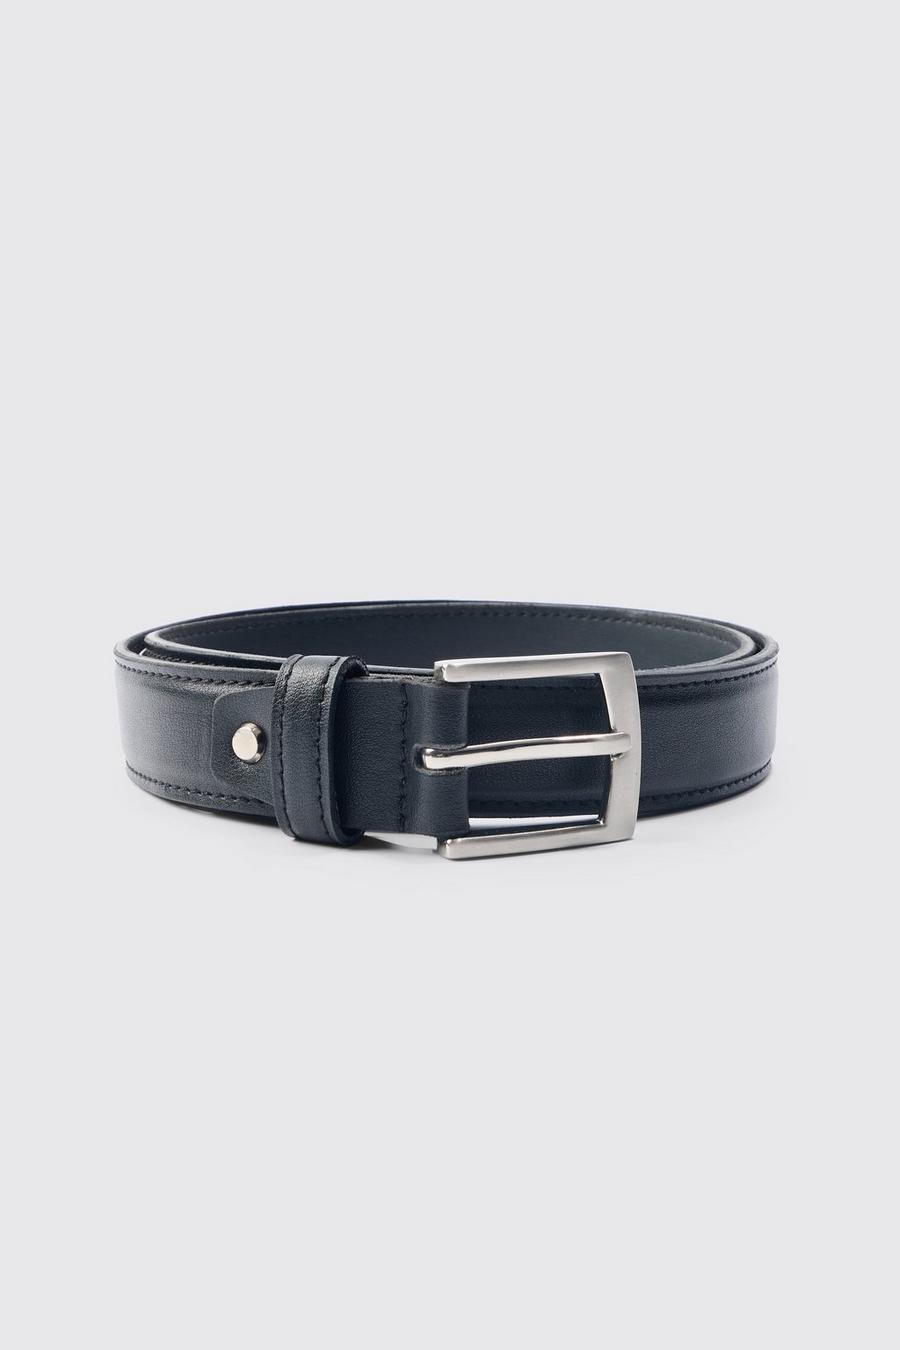 Cinturón negro de cuero sintético liso con hebilla plateada, Black